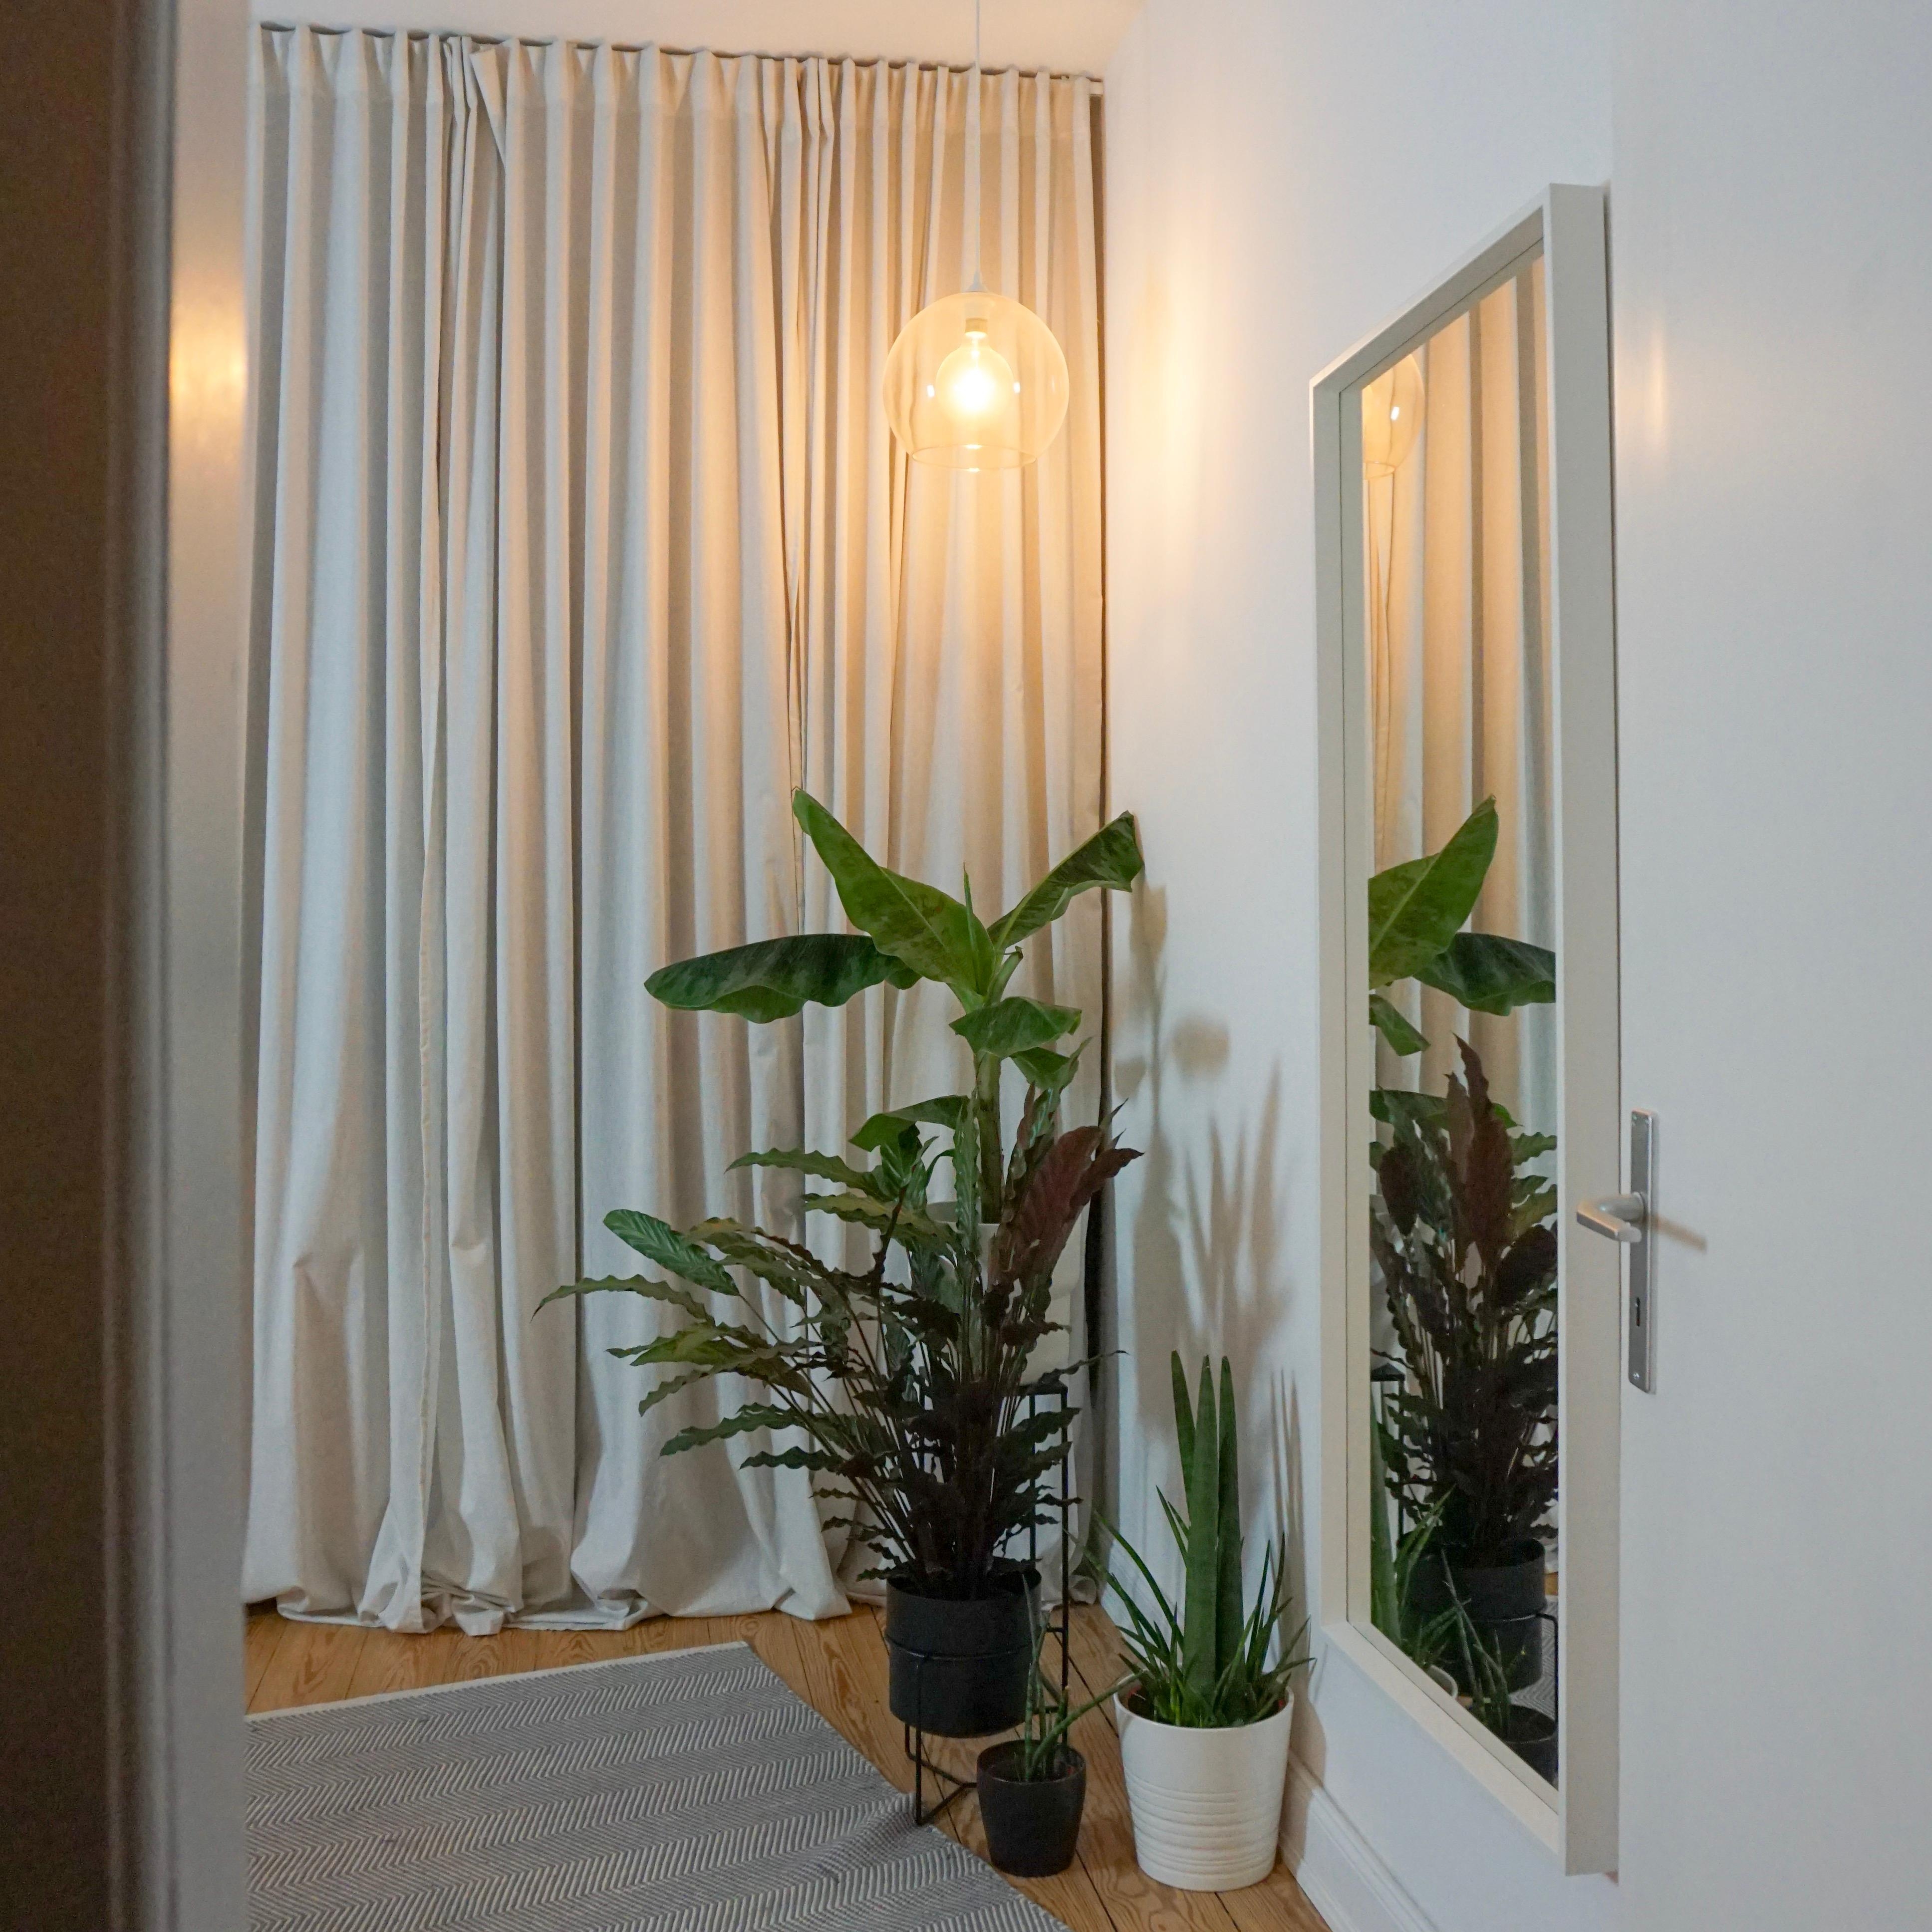 Über Ein- und Ausblicke #schlafzimmer #leuchte #spiegel #pflanzen